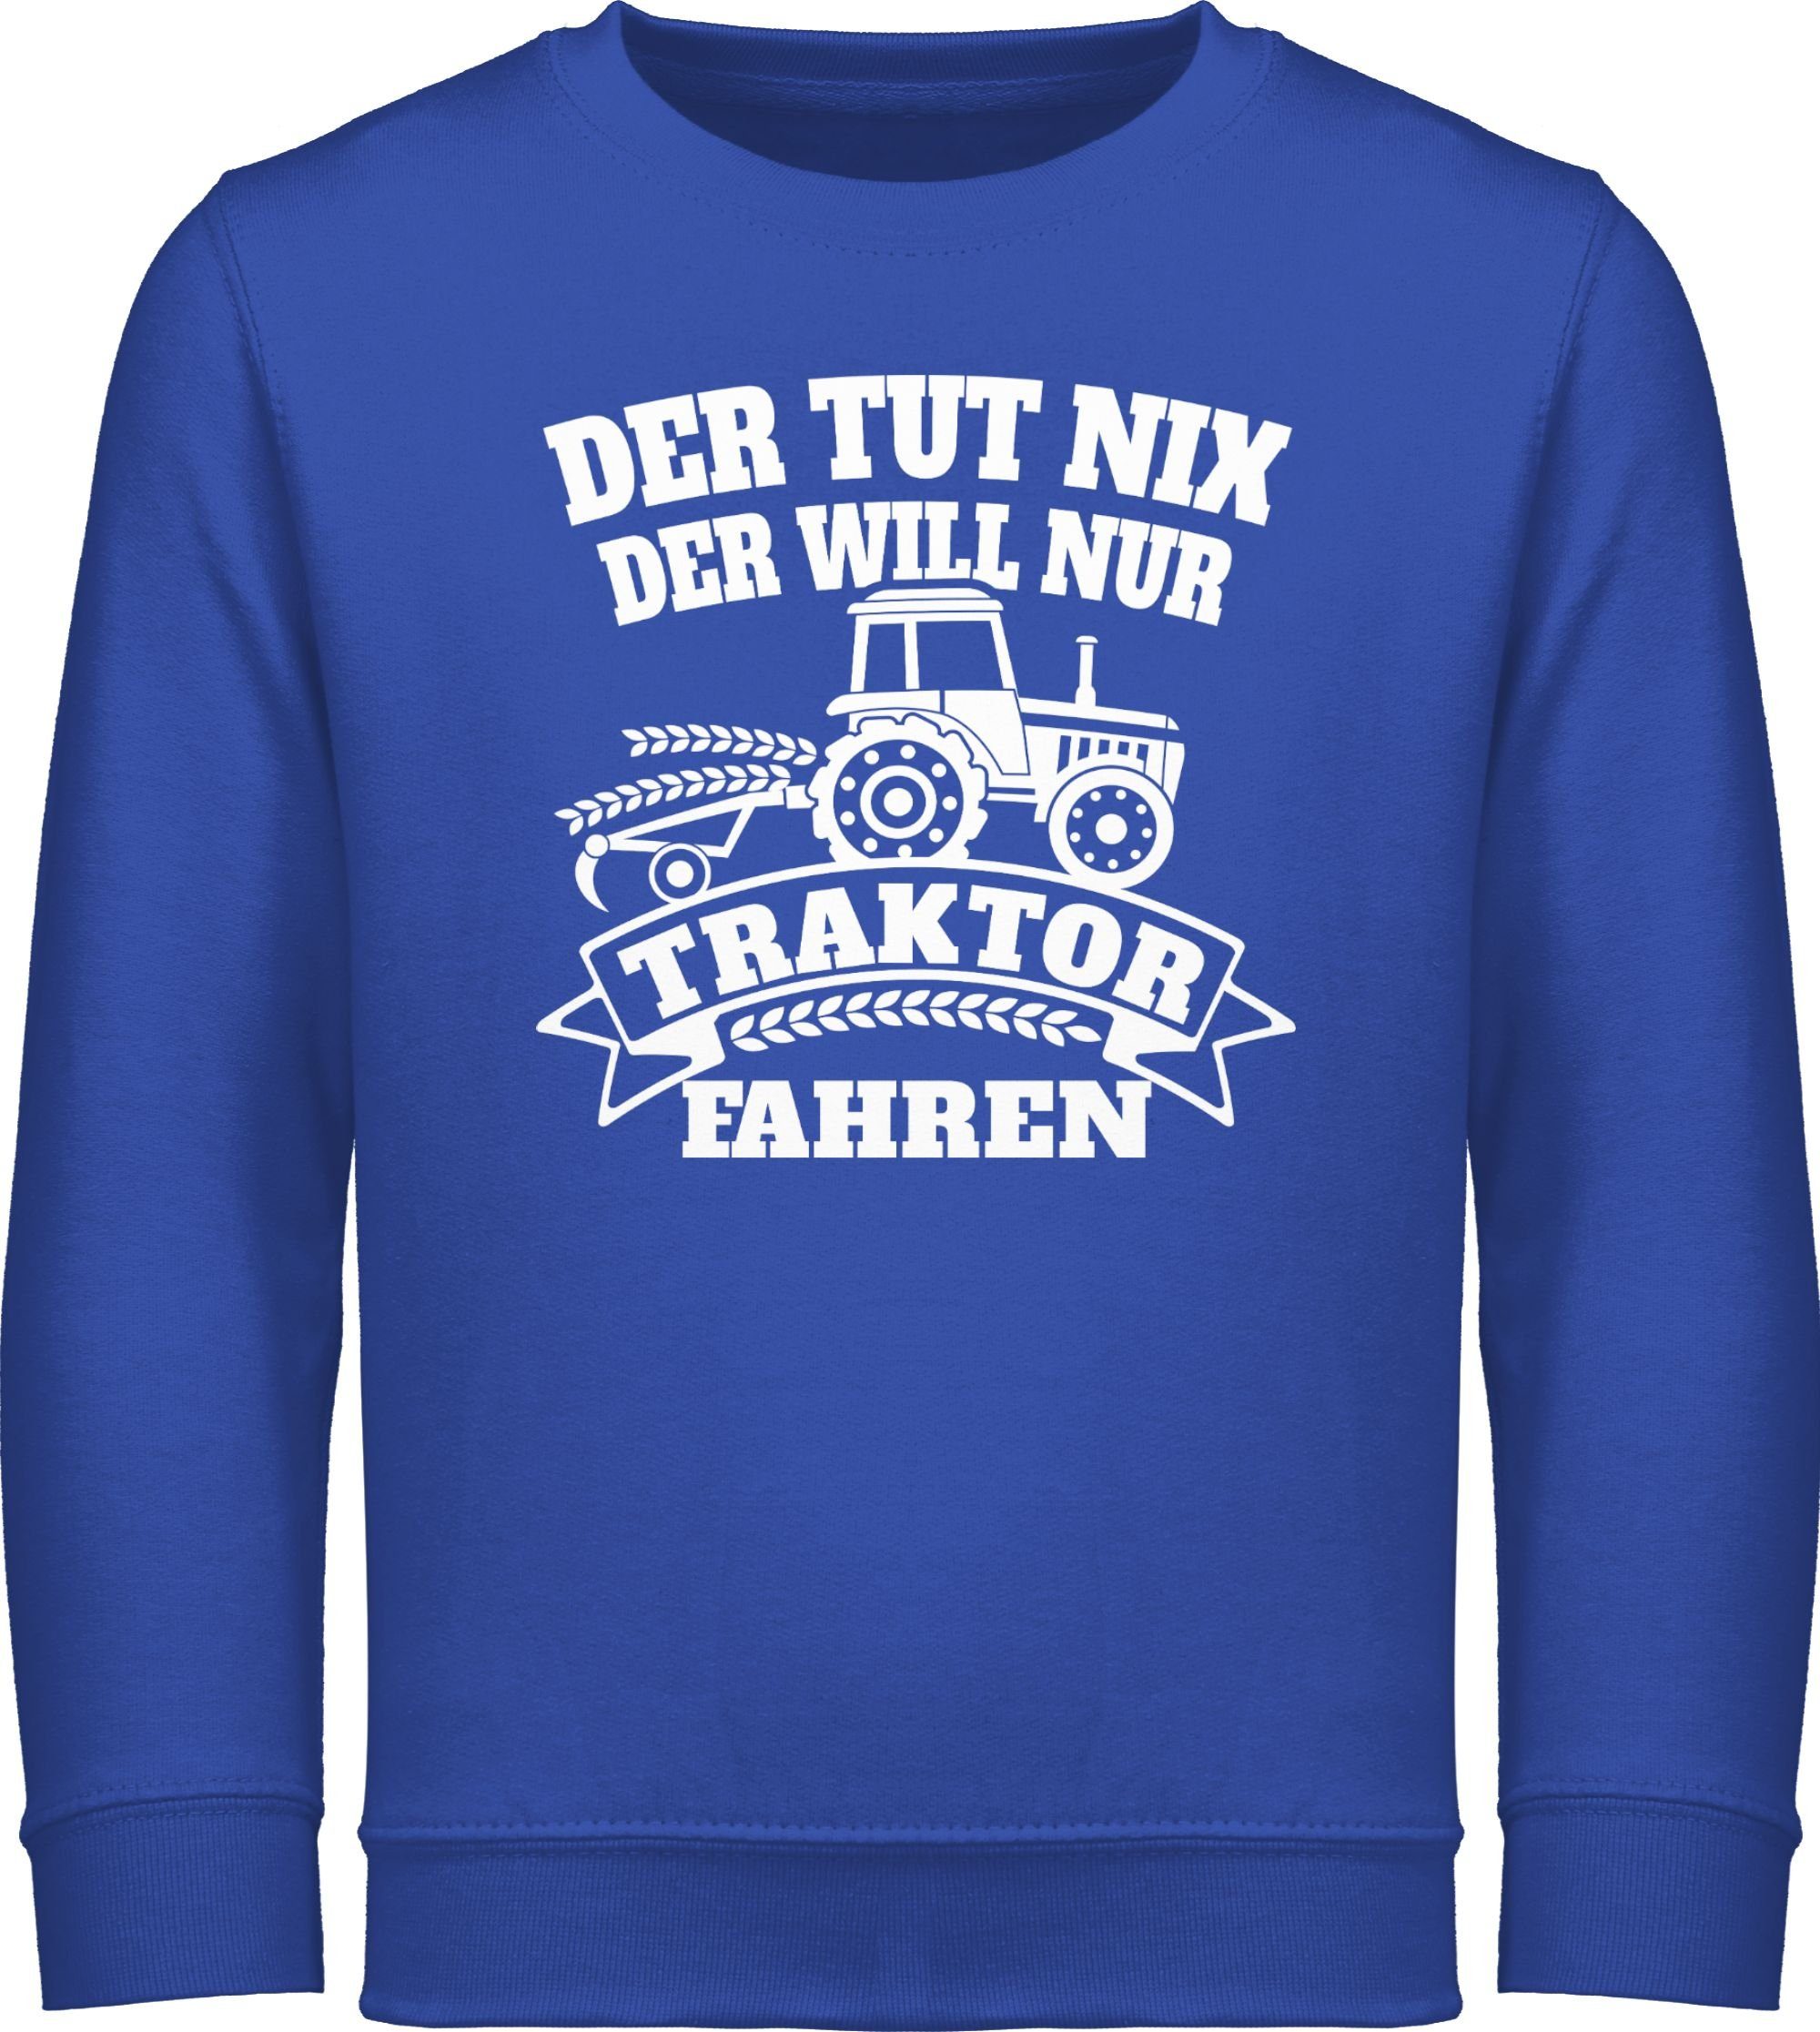 Shirtracer Sweatshirt Der will nix Royalblau Traktor 2 der tut Traktor nur fahren